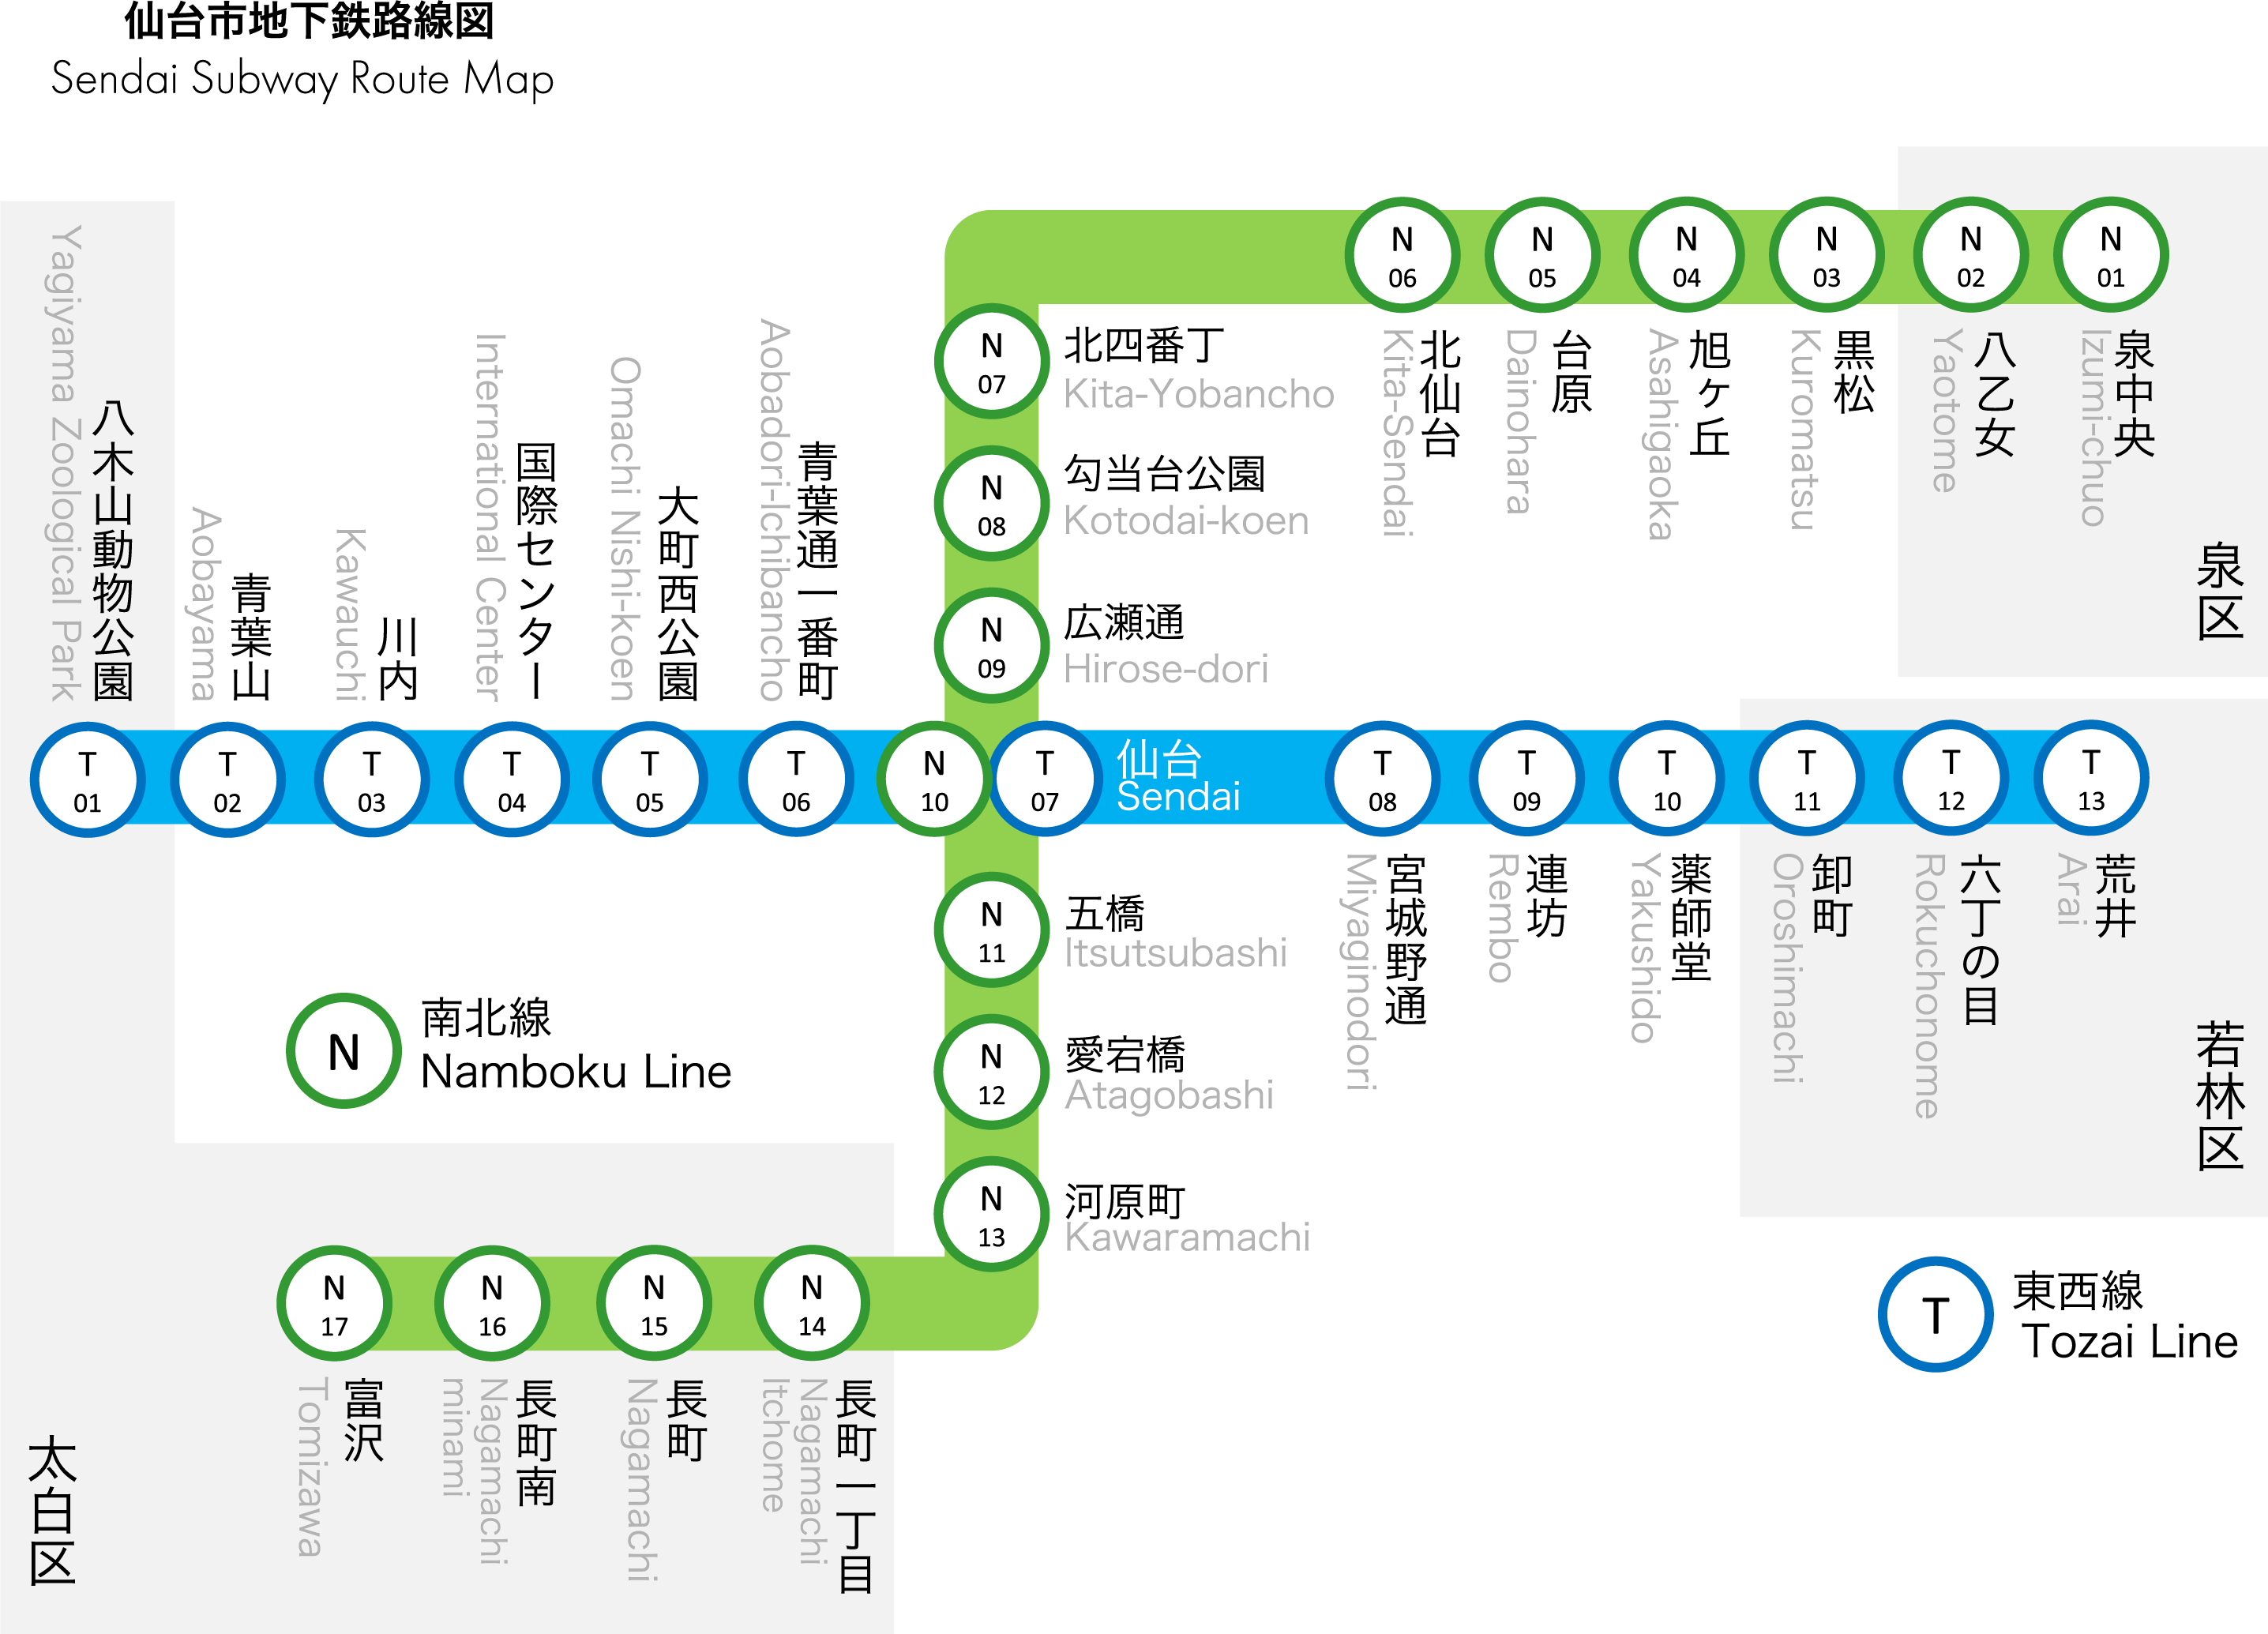 仙台市地下鉄 路線図